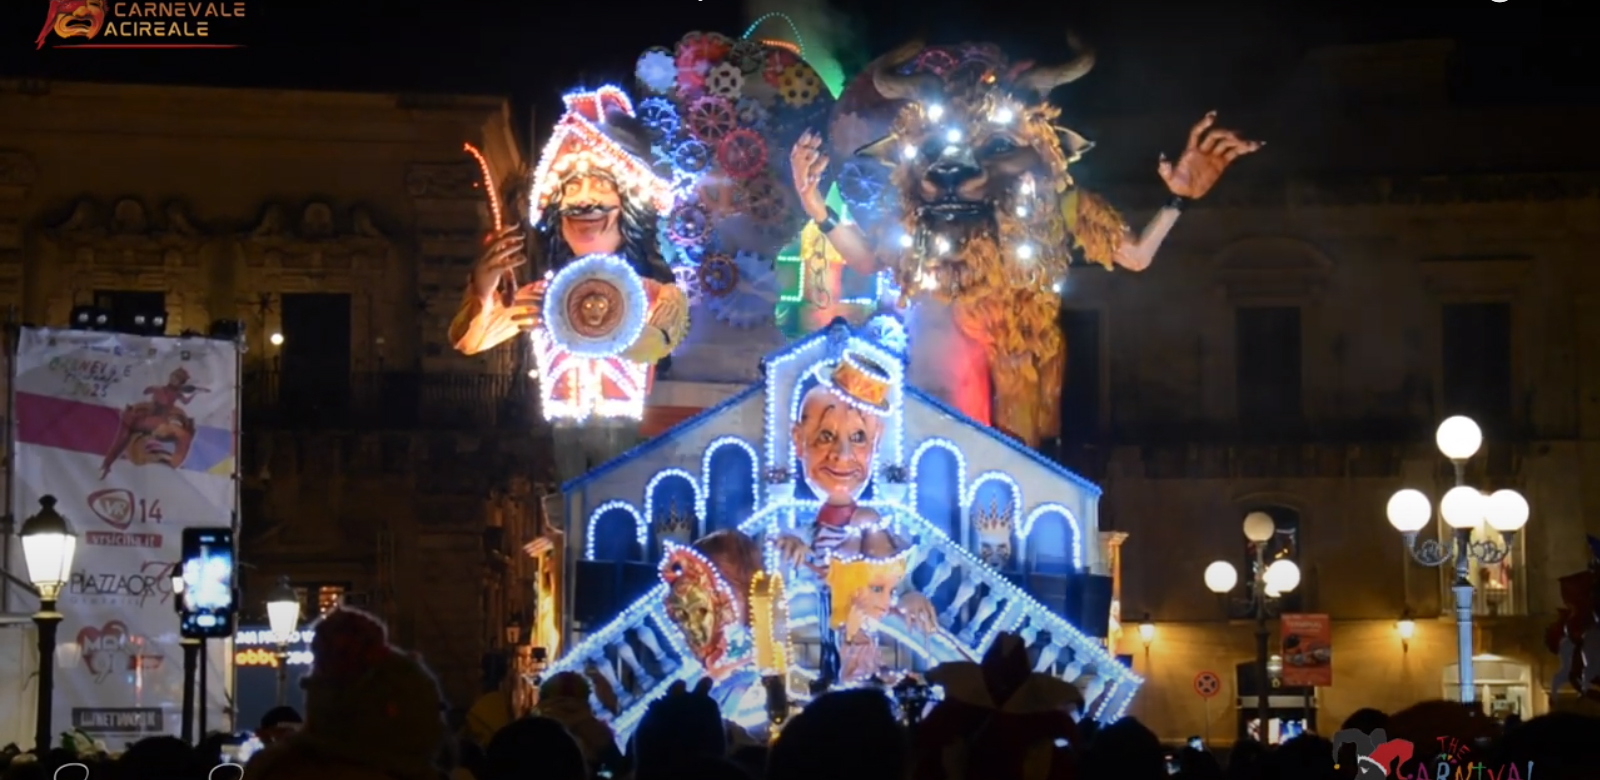 Carnevale di Acireale: Rito dell'esibizione del carro (XXI)